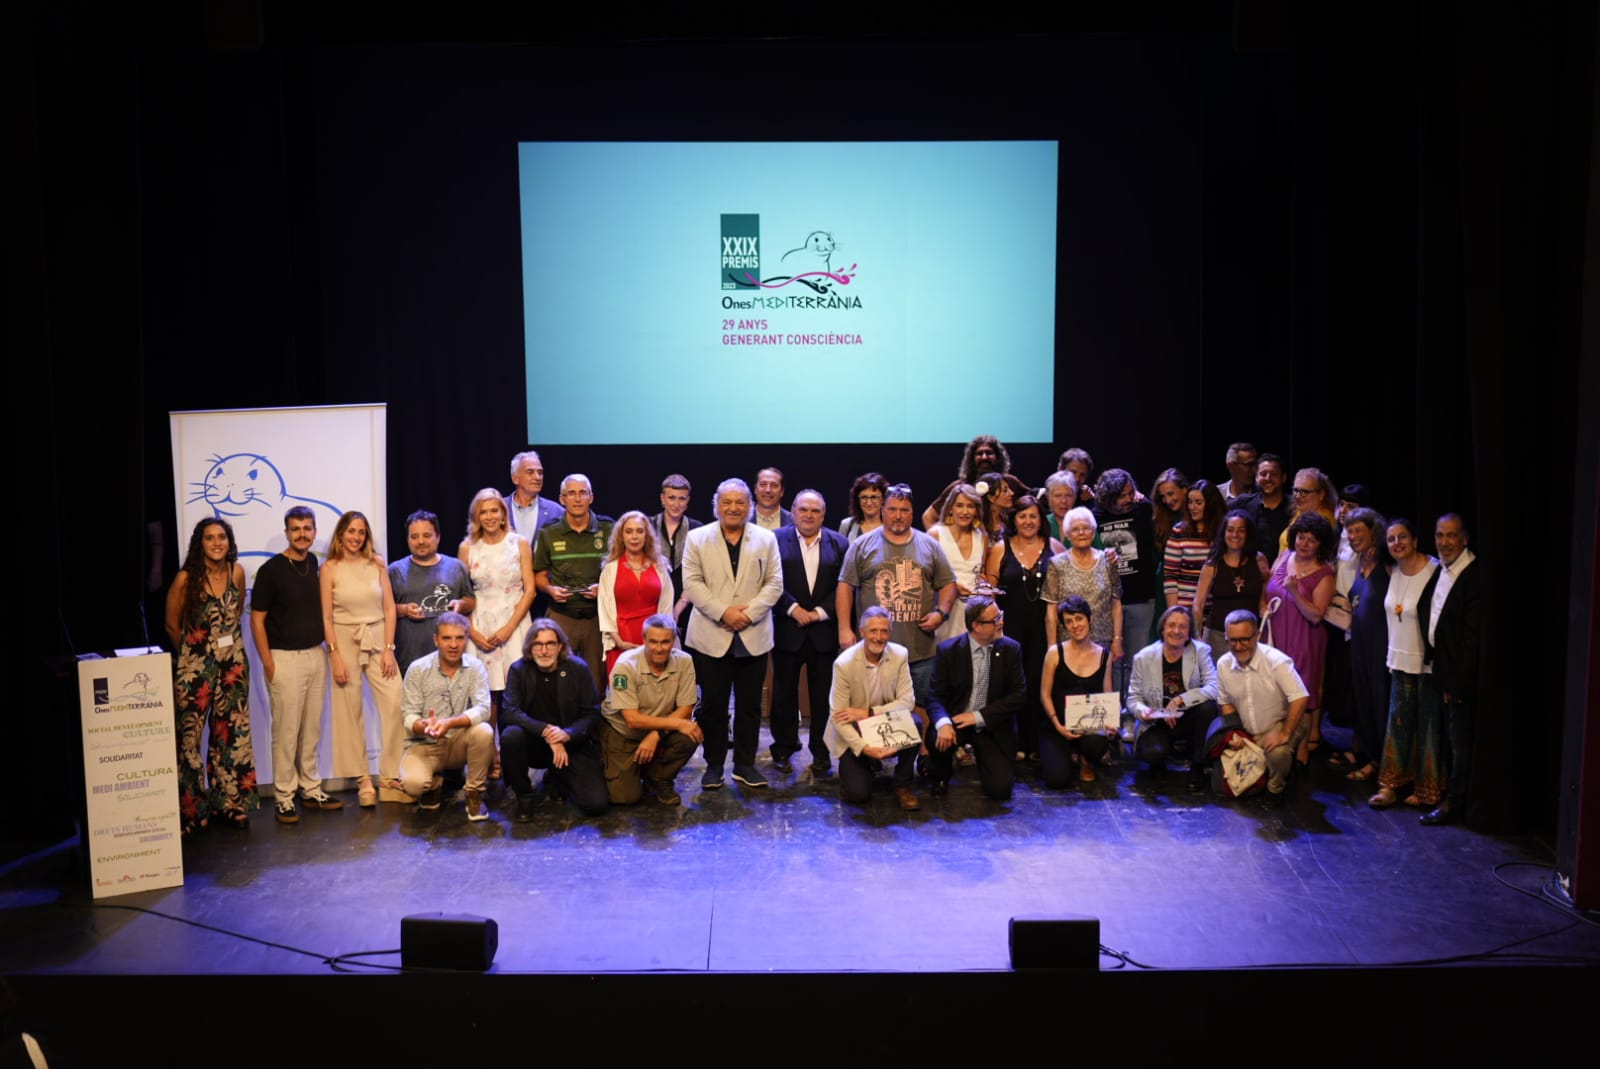 XXIX premios ones en Tarragona que ha premiado la labor de Reporteros sin Fronteras, Profesores por el futuro, y Fernando Valladares, entre otros